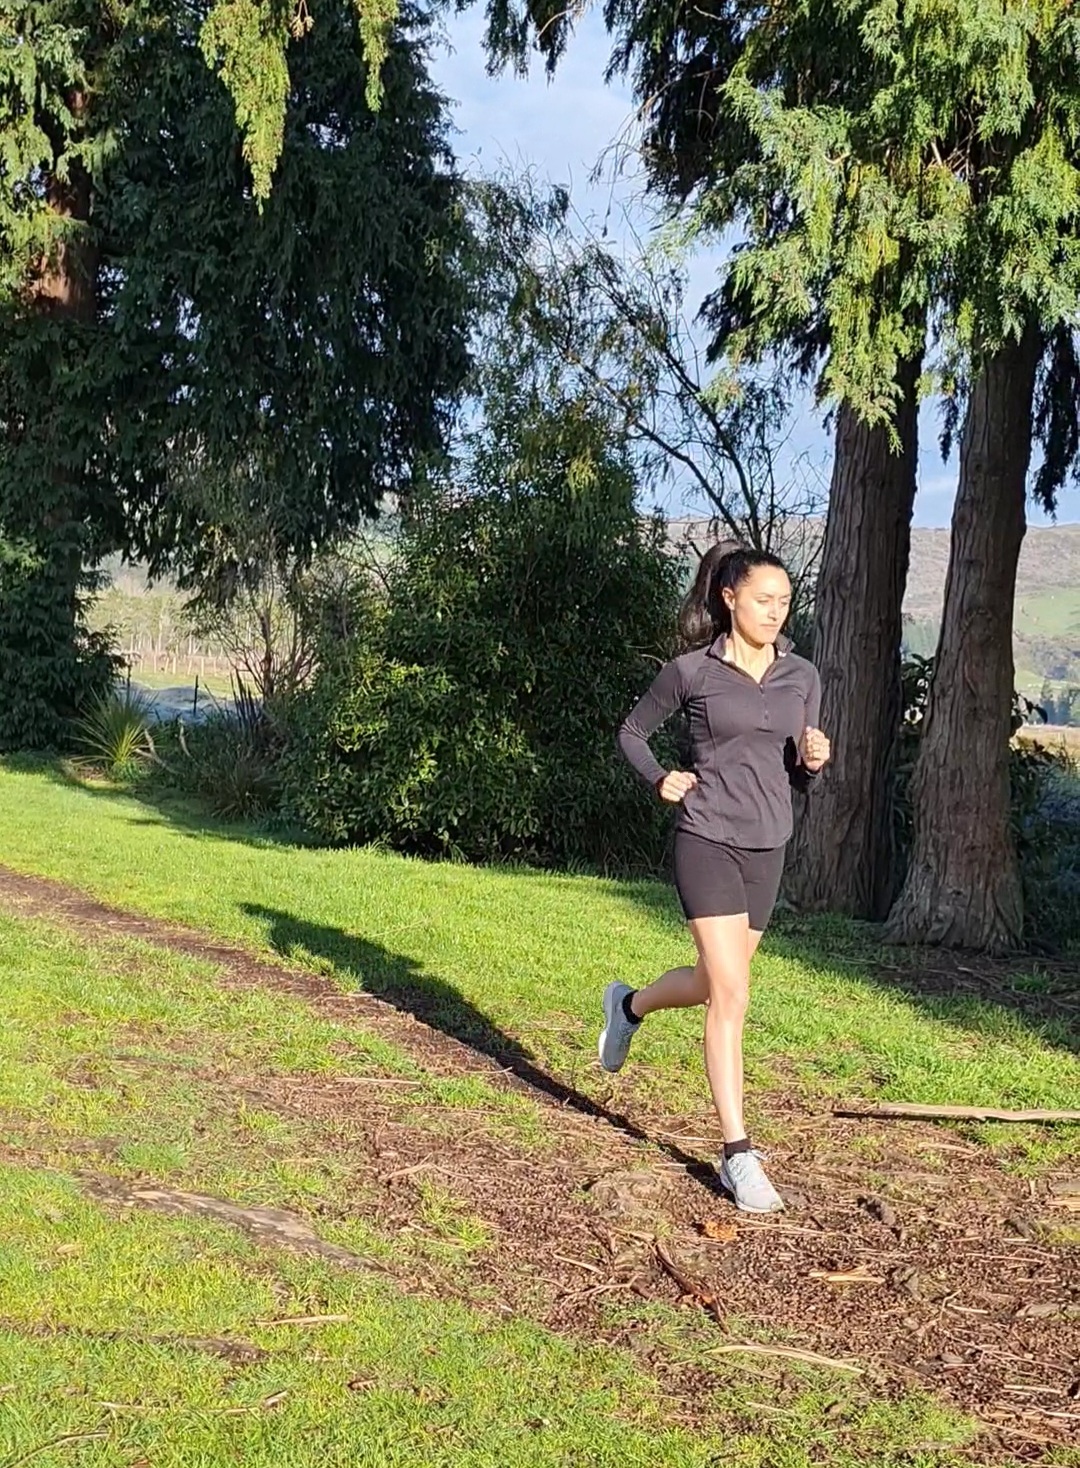 Mayoral candidates enter Rotorua Marathon - Athletics New Zealand